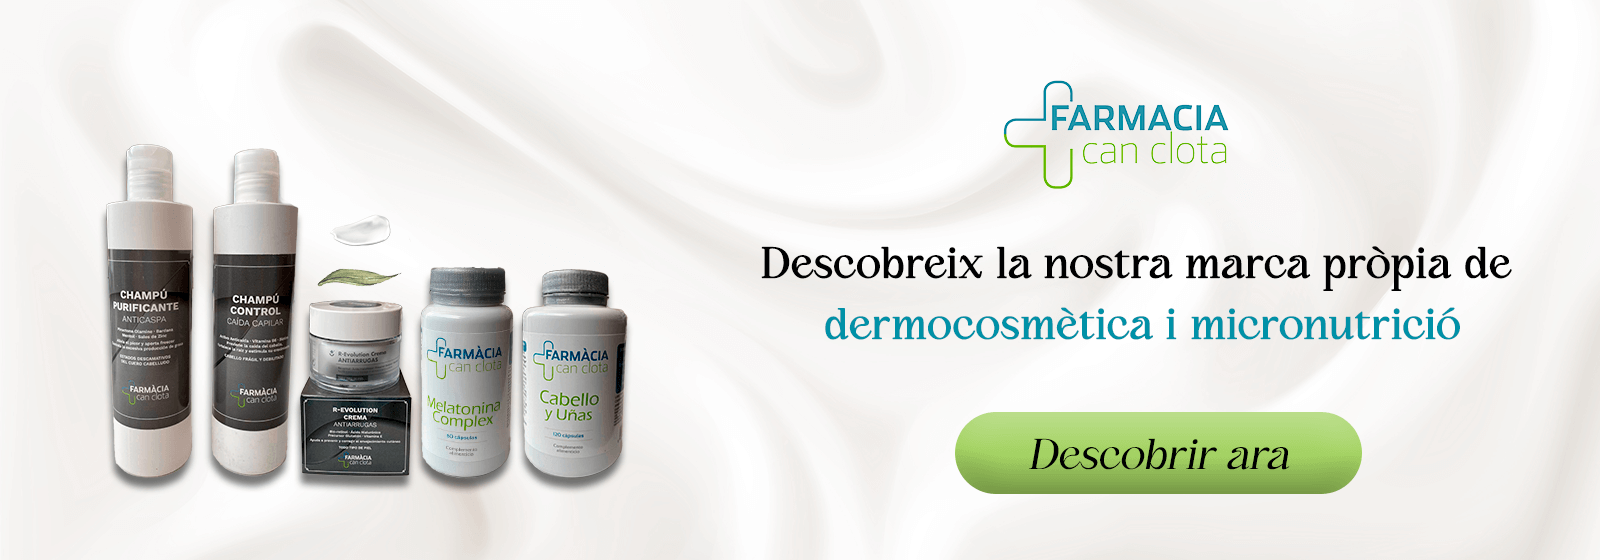 Descobreix la nostra marca pròpia de dermocosmètica i micronutrició. Fes clic per a més informació.